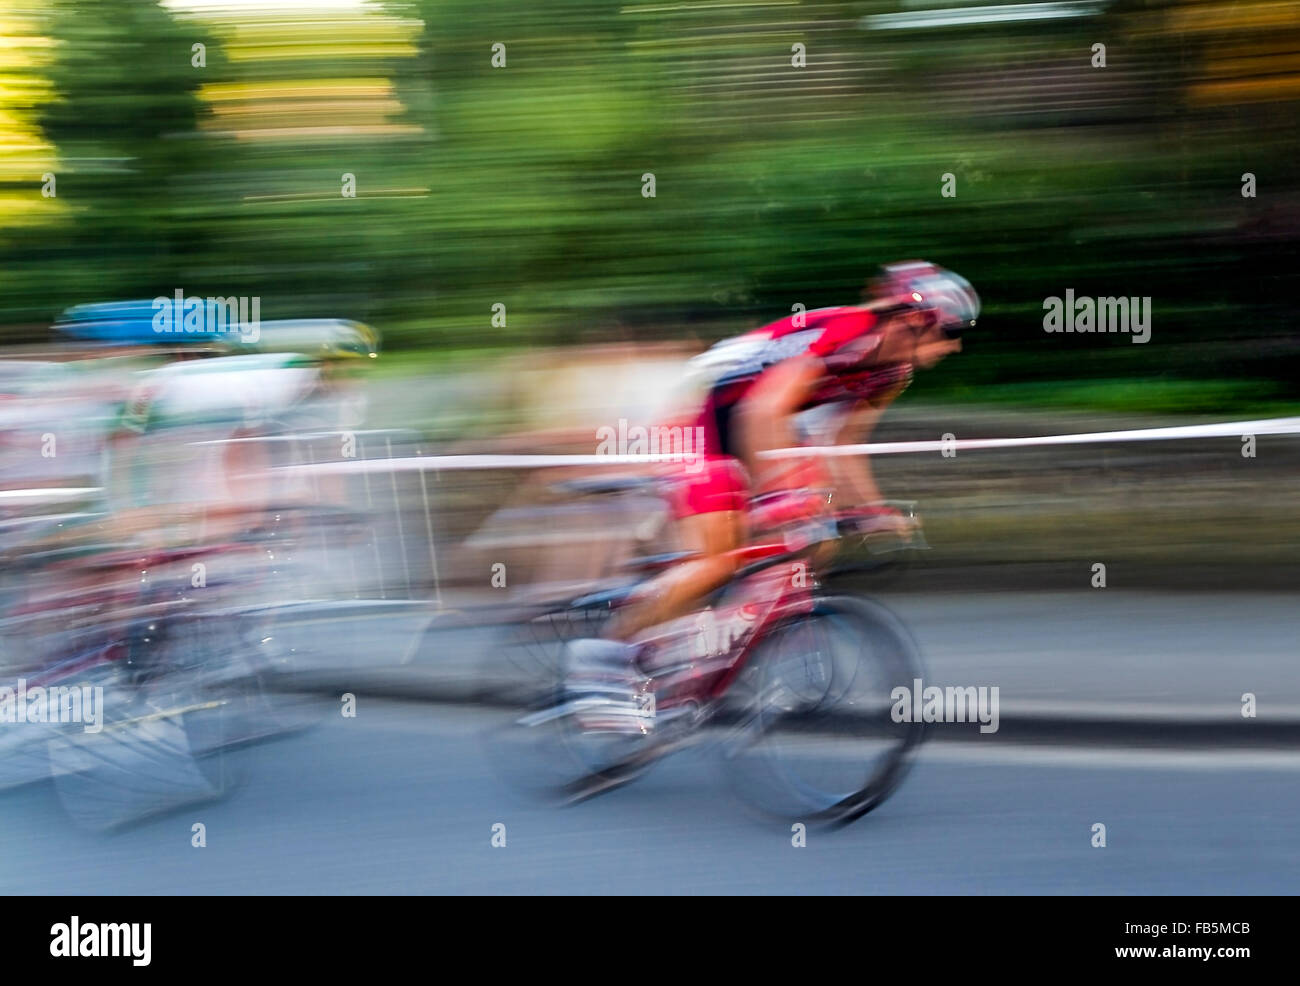 Bicyclist blurred Stock Photo - Alamy